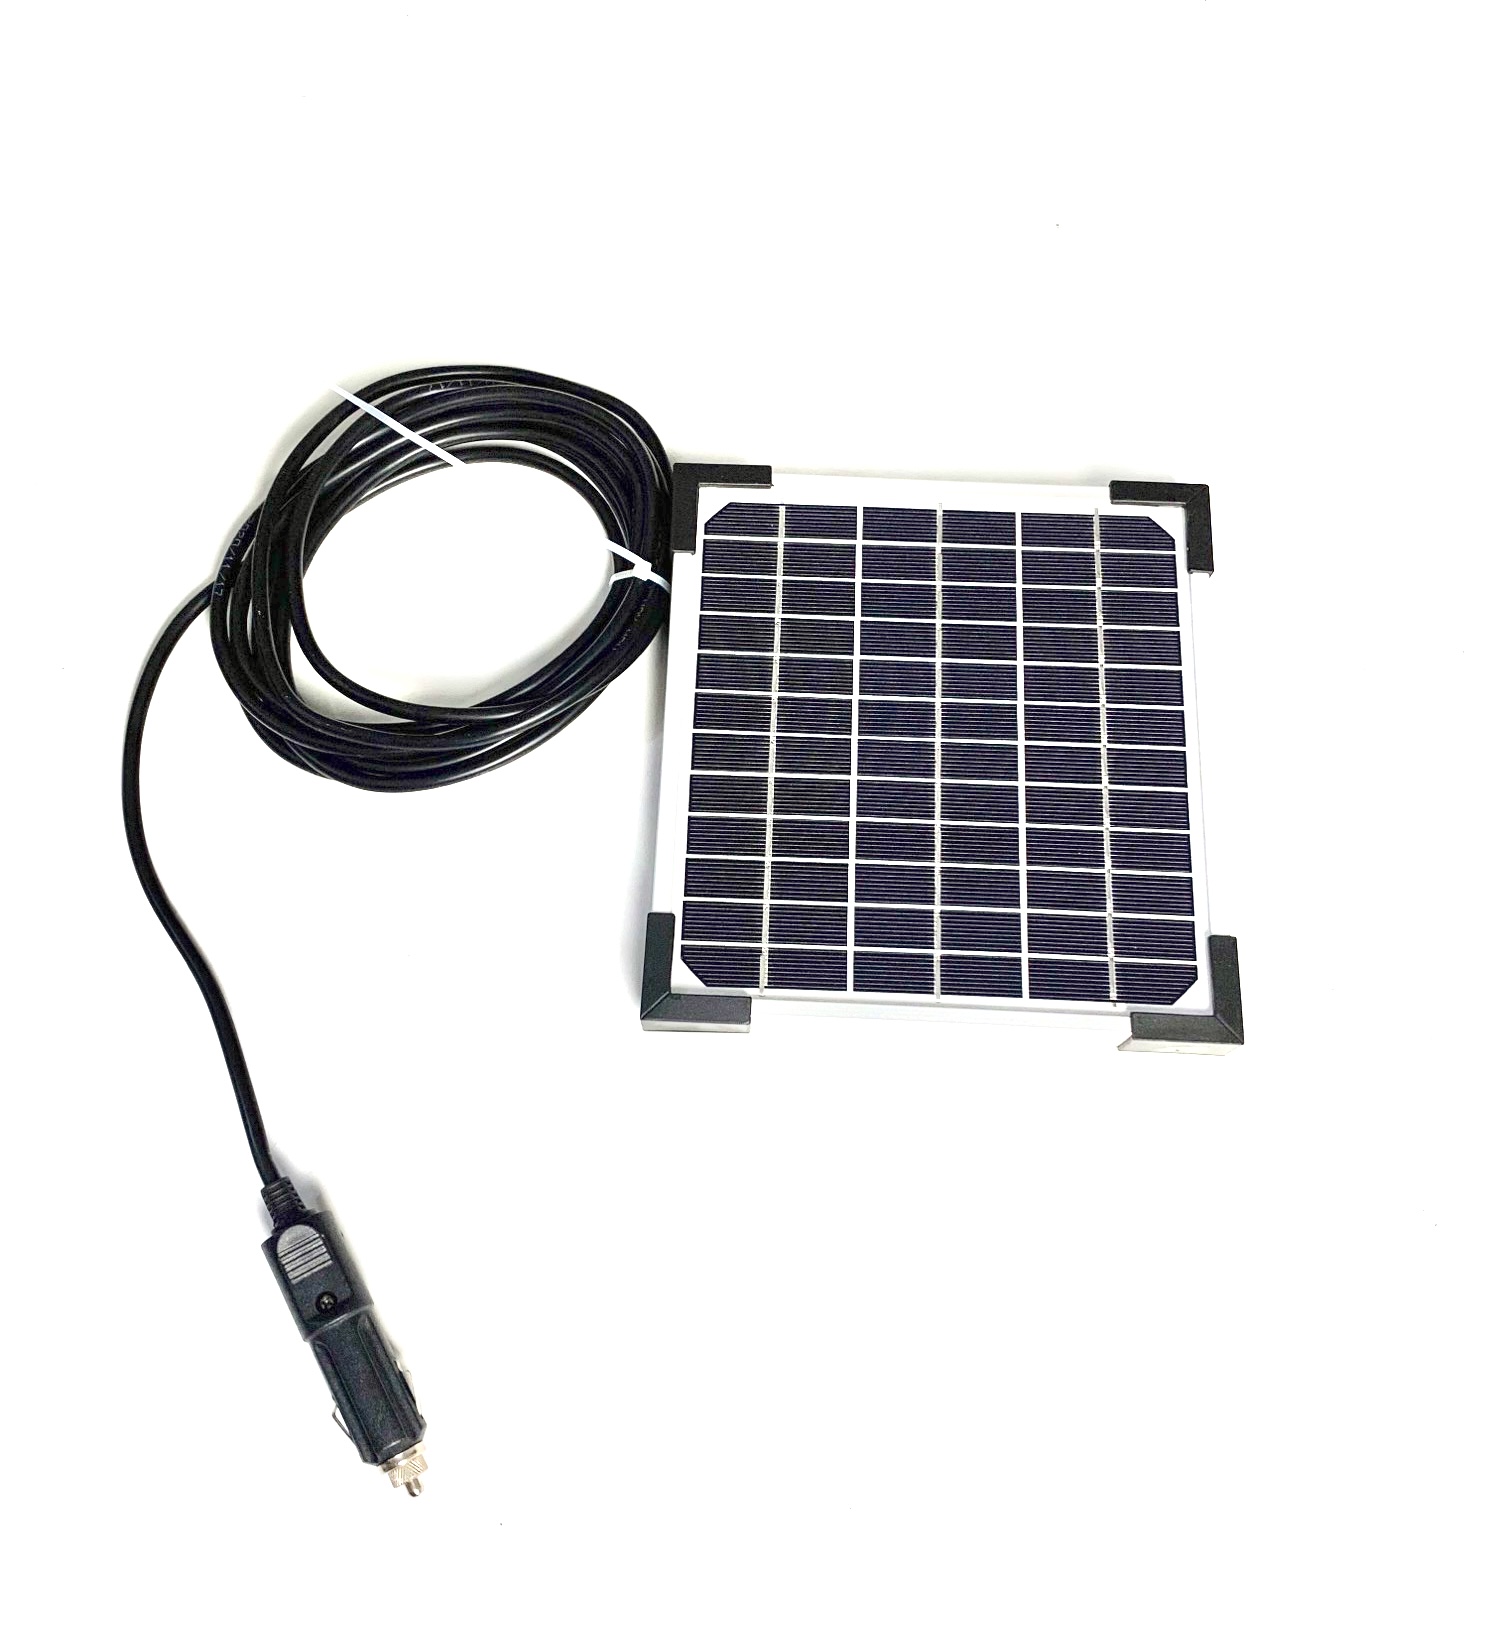 Ηλιακός Φορτιστής Μπαταρίας 5W - 12V - 0,3A με 4μ καλώδιο και  Βύσμα Αναπτήρα